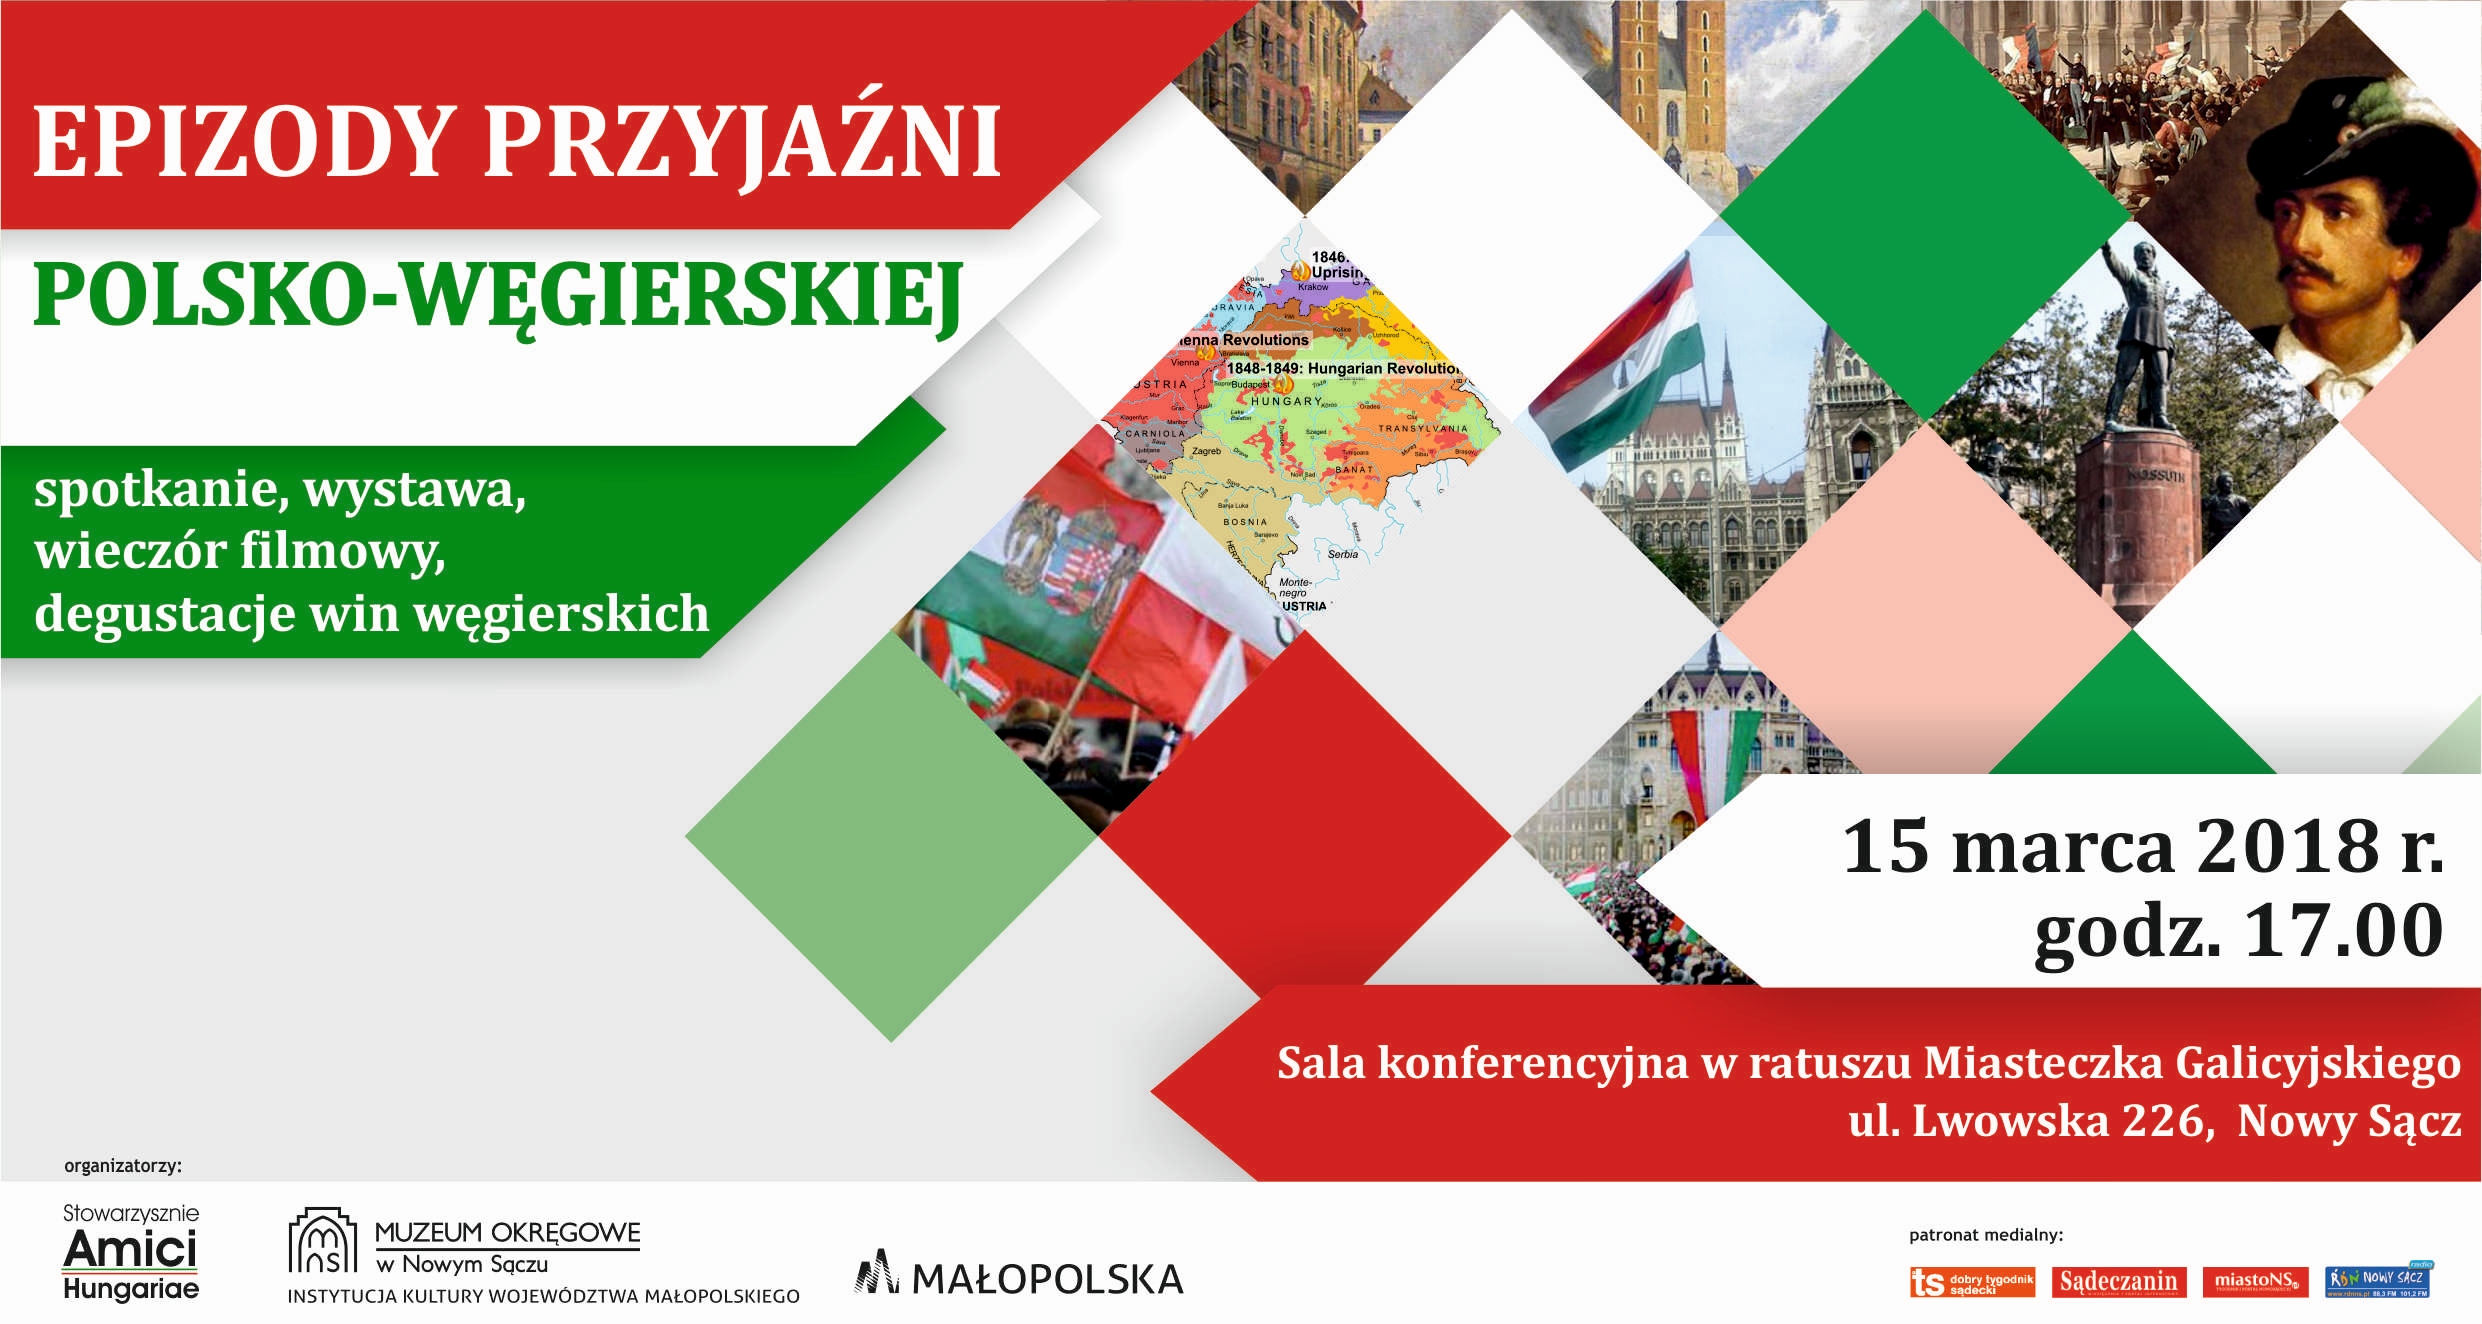 W dniu Święta Narodowego Węgier ZAPRASZAMY na obchody 170 rocznicy Powstania węgierskiego 1848 r.